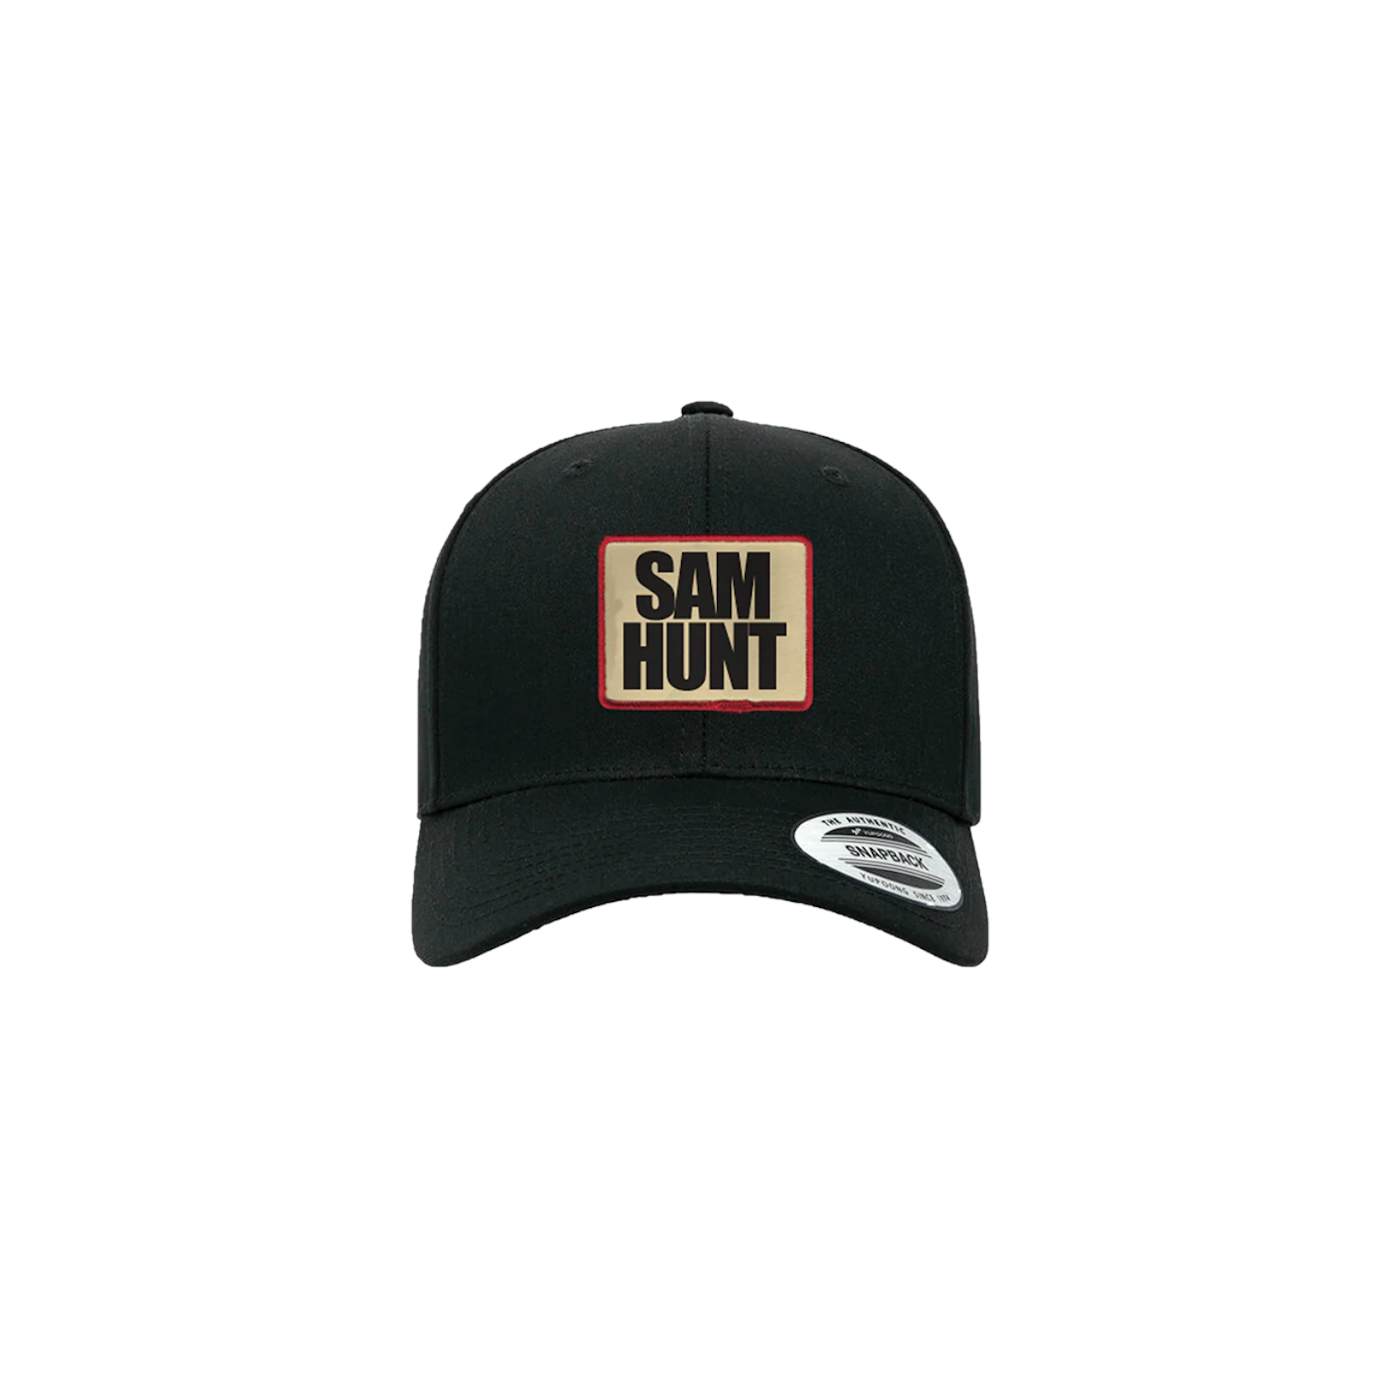 Sam Hunt Classic Trucker Patch Hat